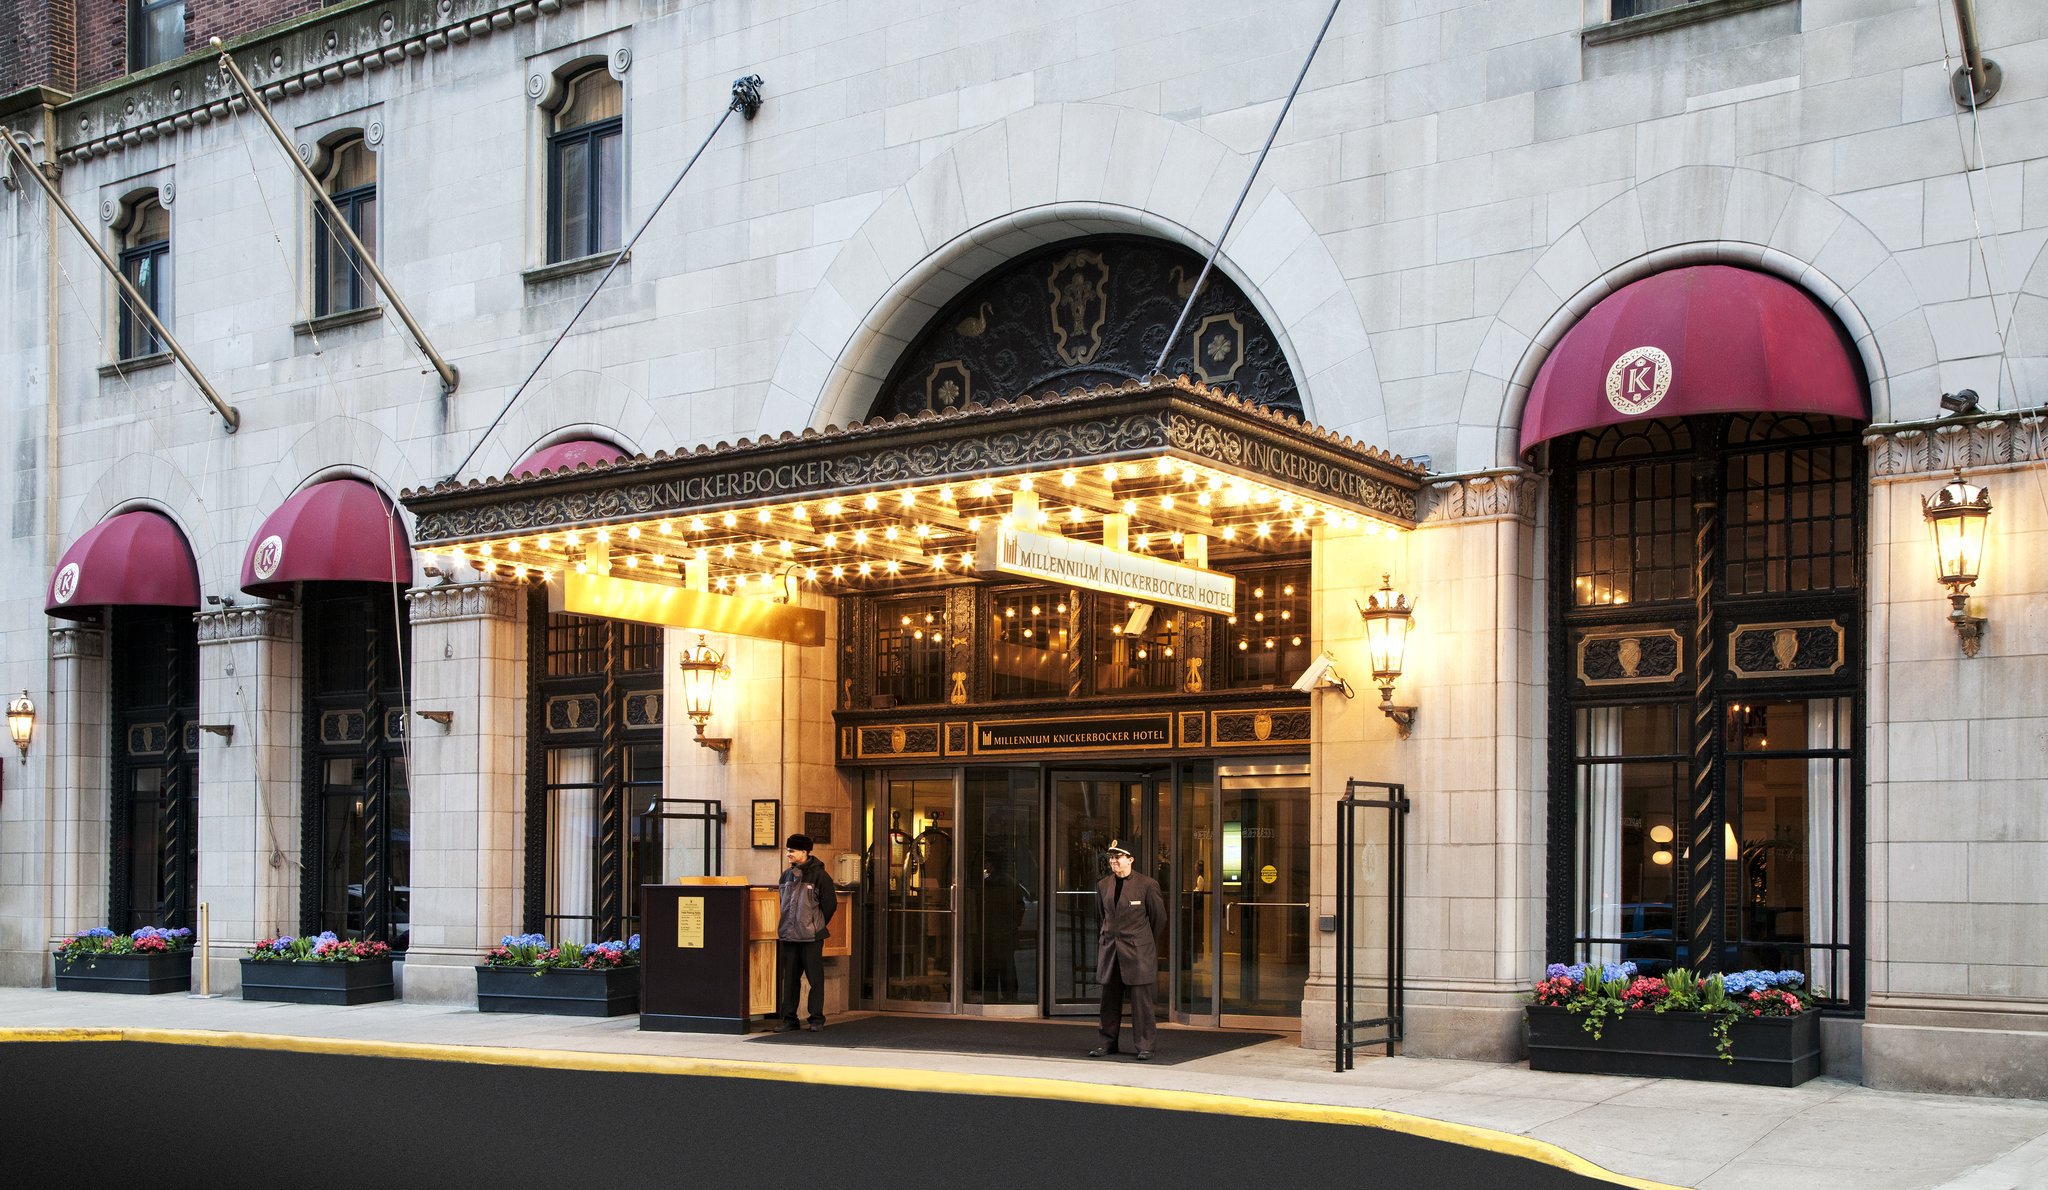 Photo of Millennium Knickerbocker Hotel Chicago, Chicago, IL